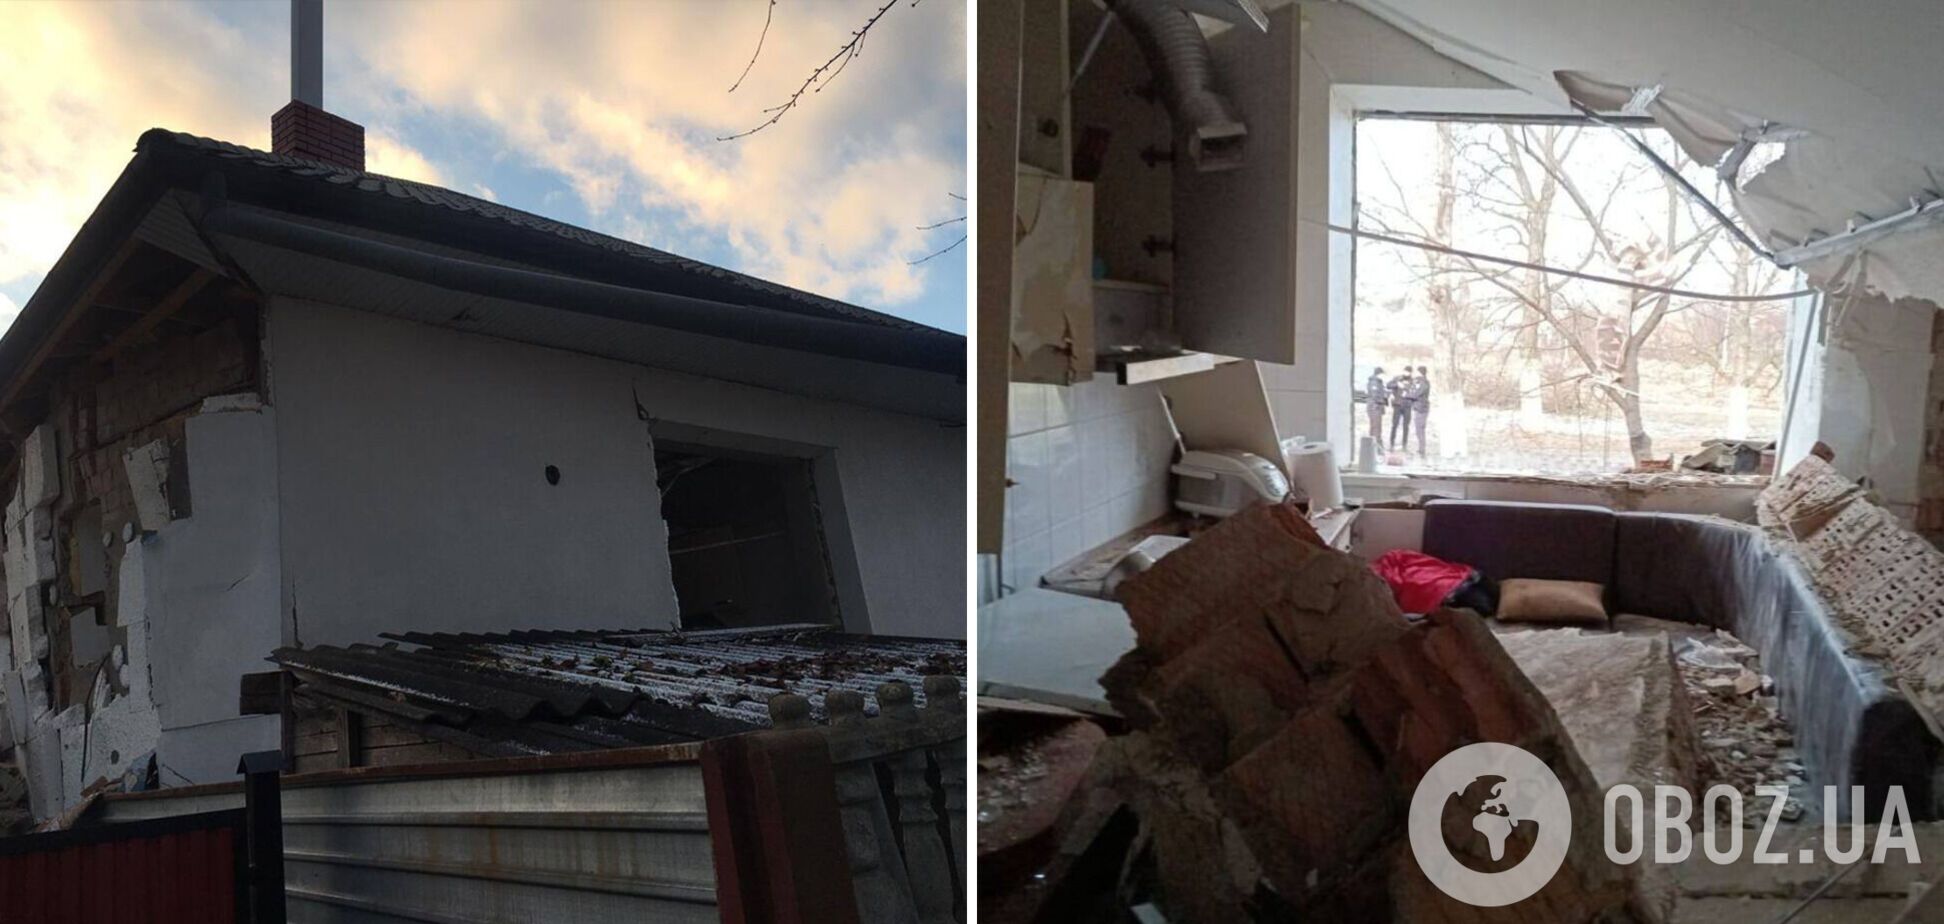 У Чернівцях стався вибух газу в будинку: загинула дитина, є постраждалі. Фото